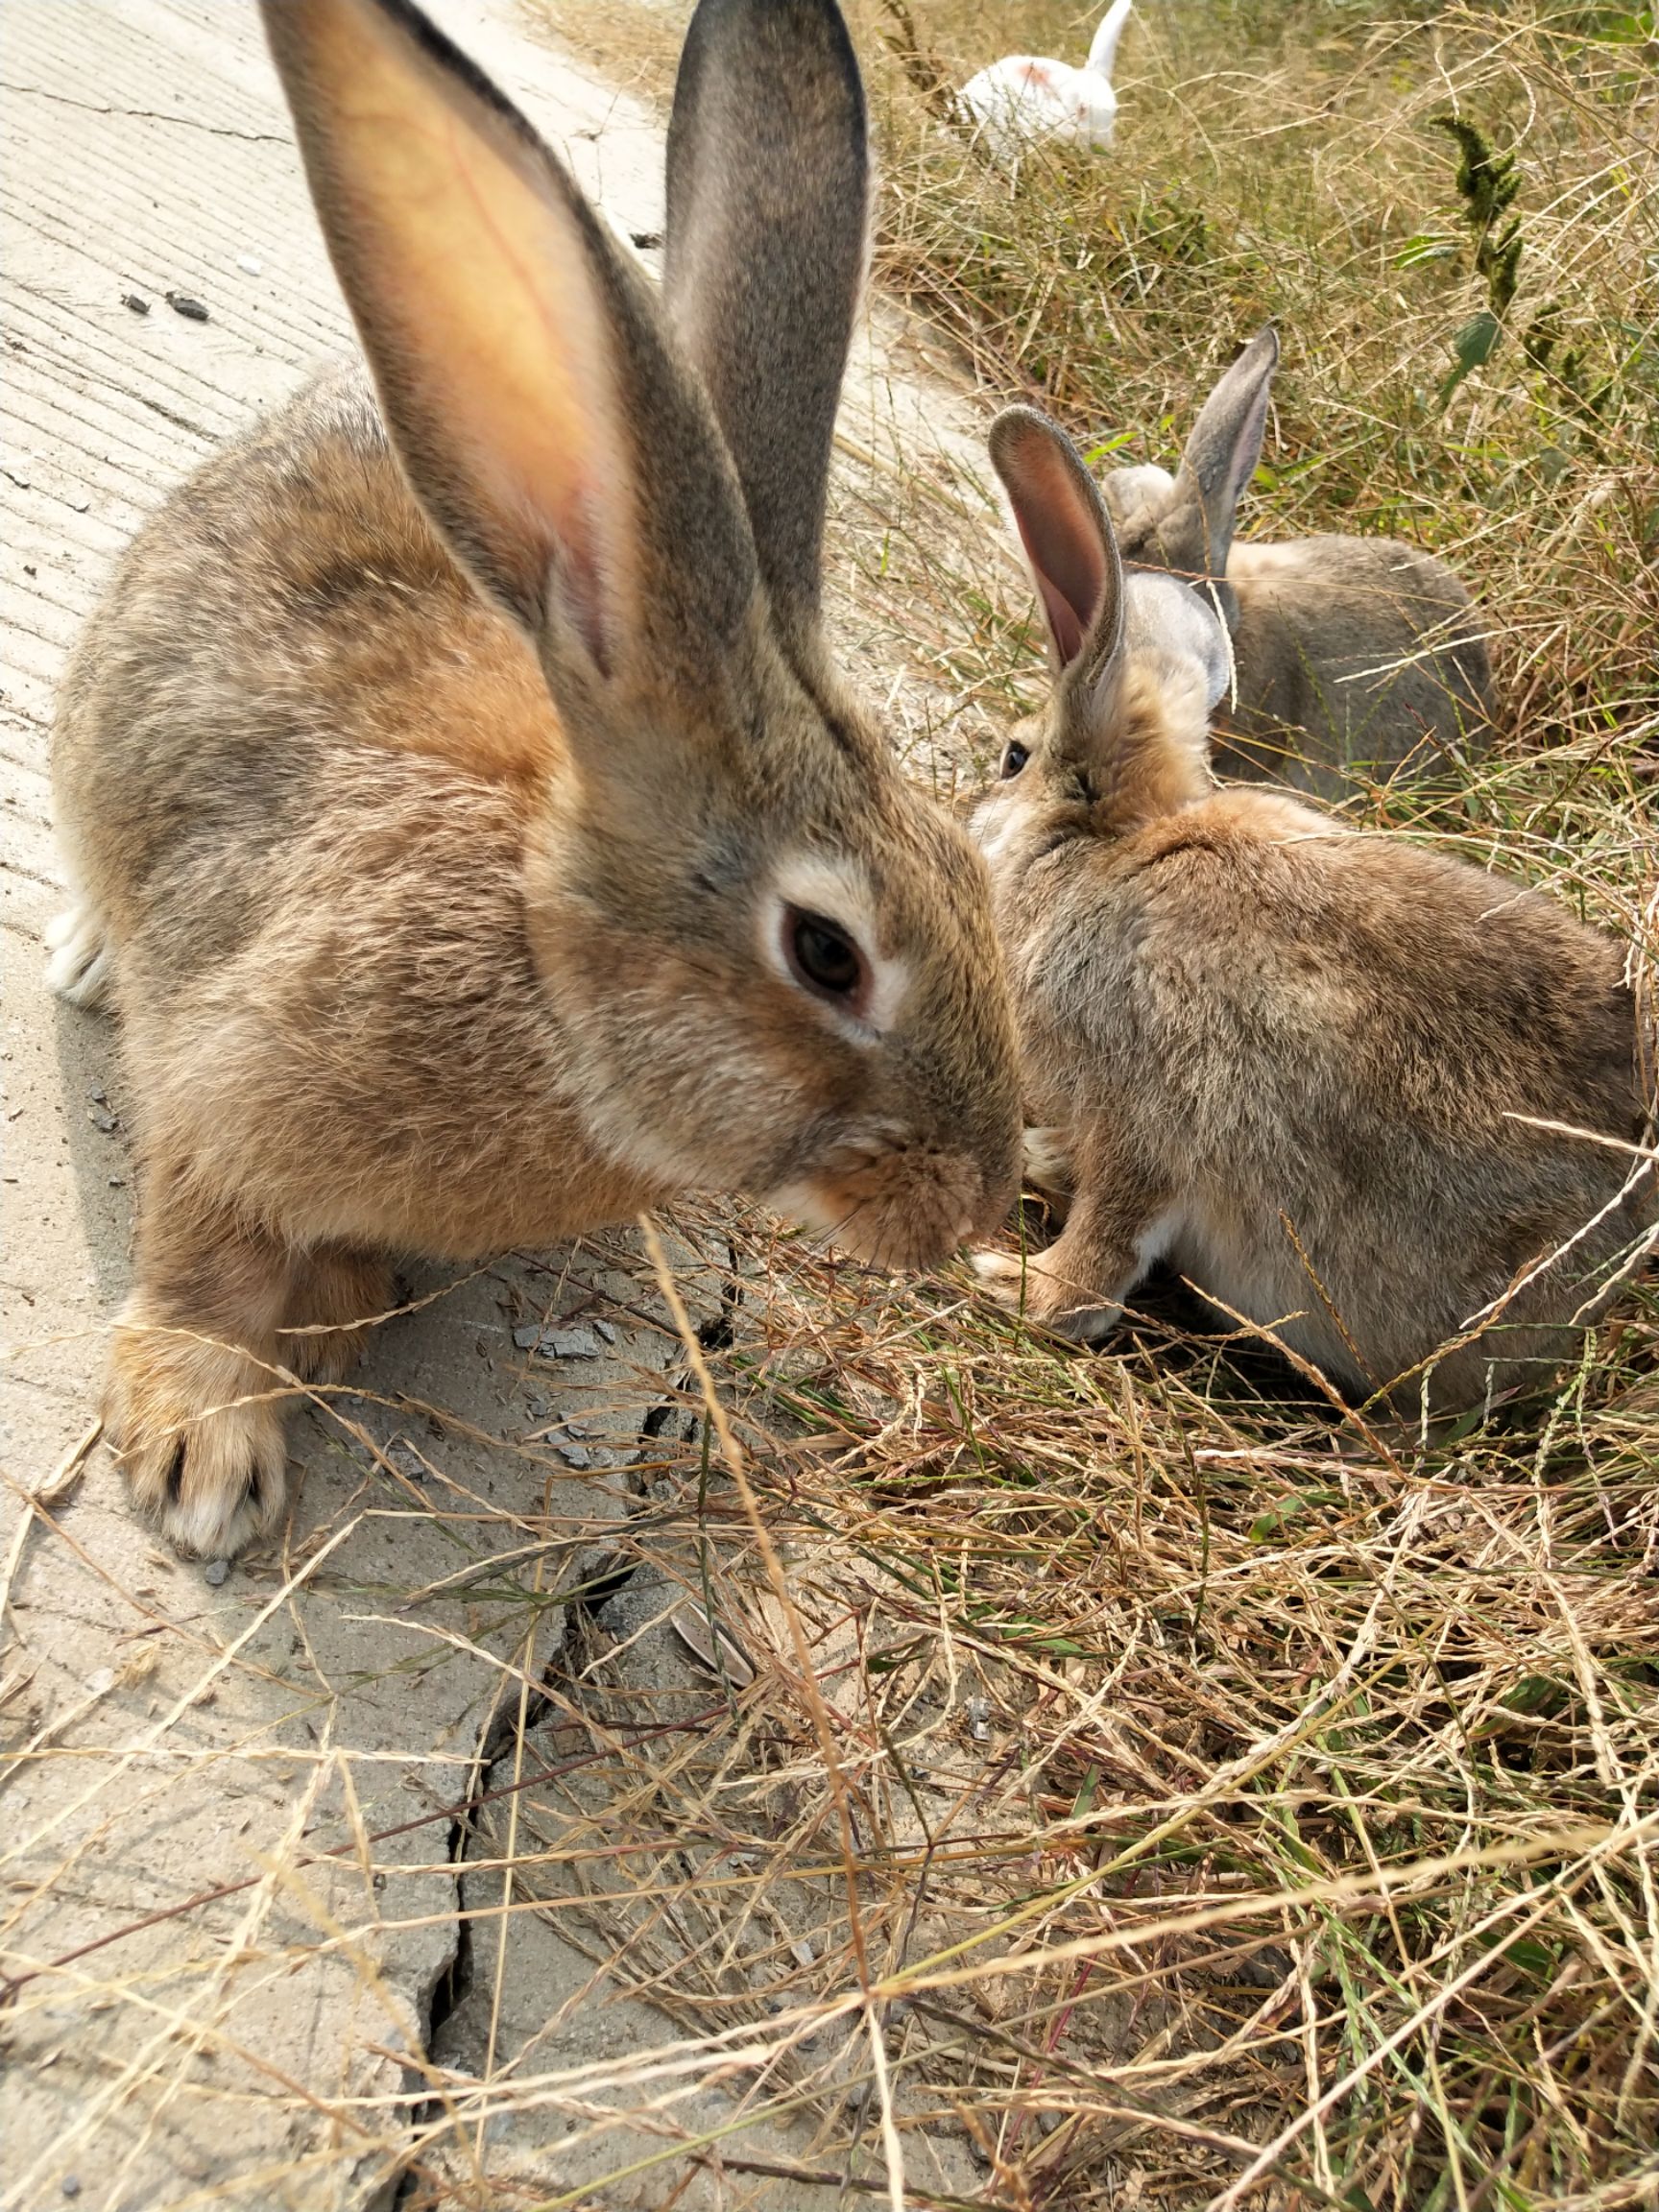 供应大厅  禽畜肉蛋  兔子  商品属性 品种名:比利时兔 单只重:3-5斤